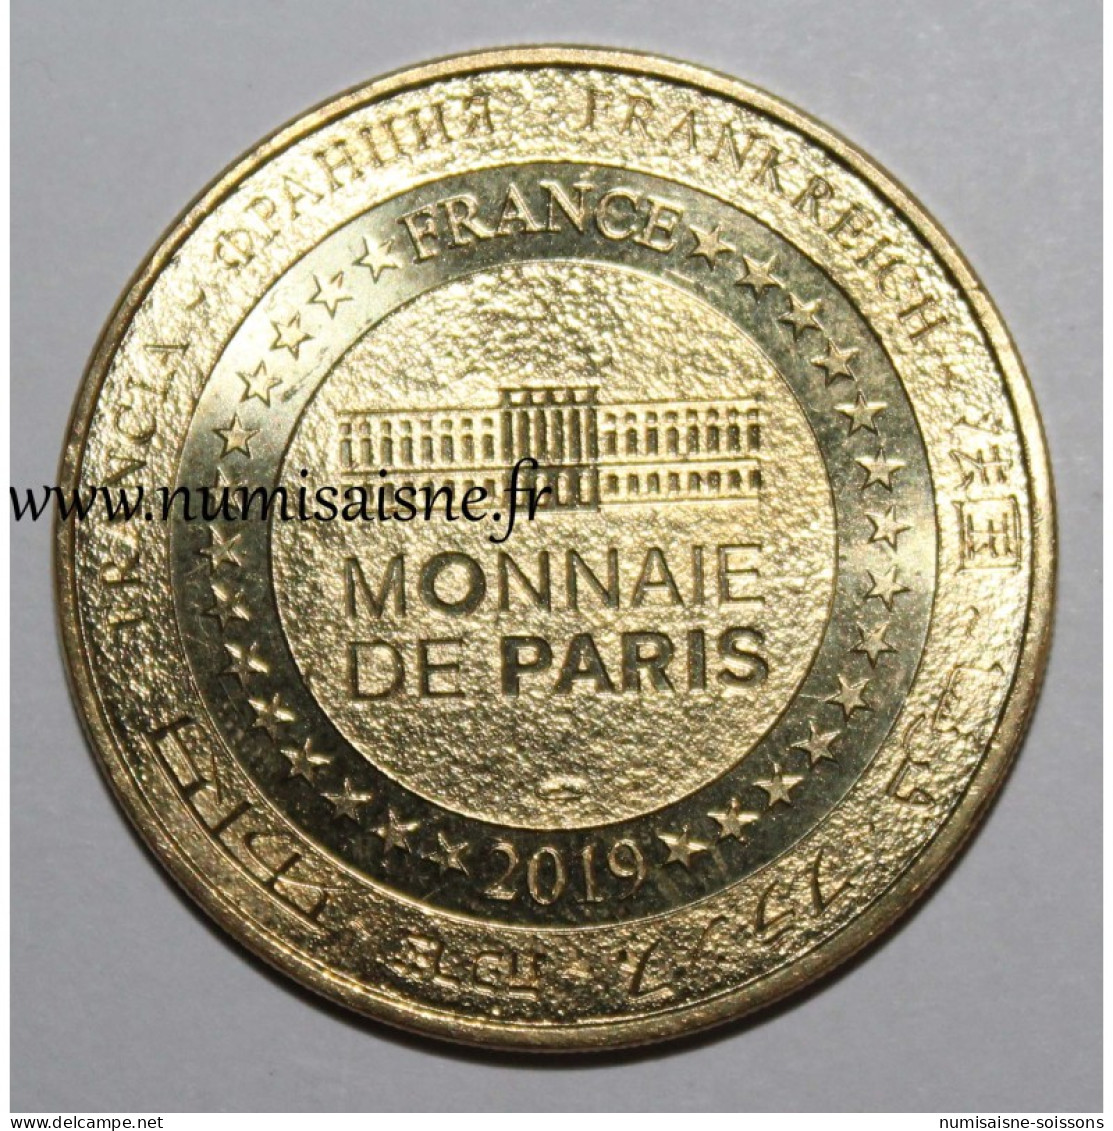 77 - MARNE LA VALLÉE - DISNEYLAND - Tic Et Tac - Monnaie De Paris - 2019 - Undated